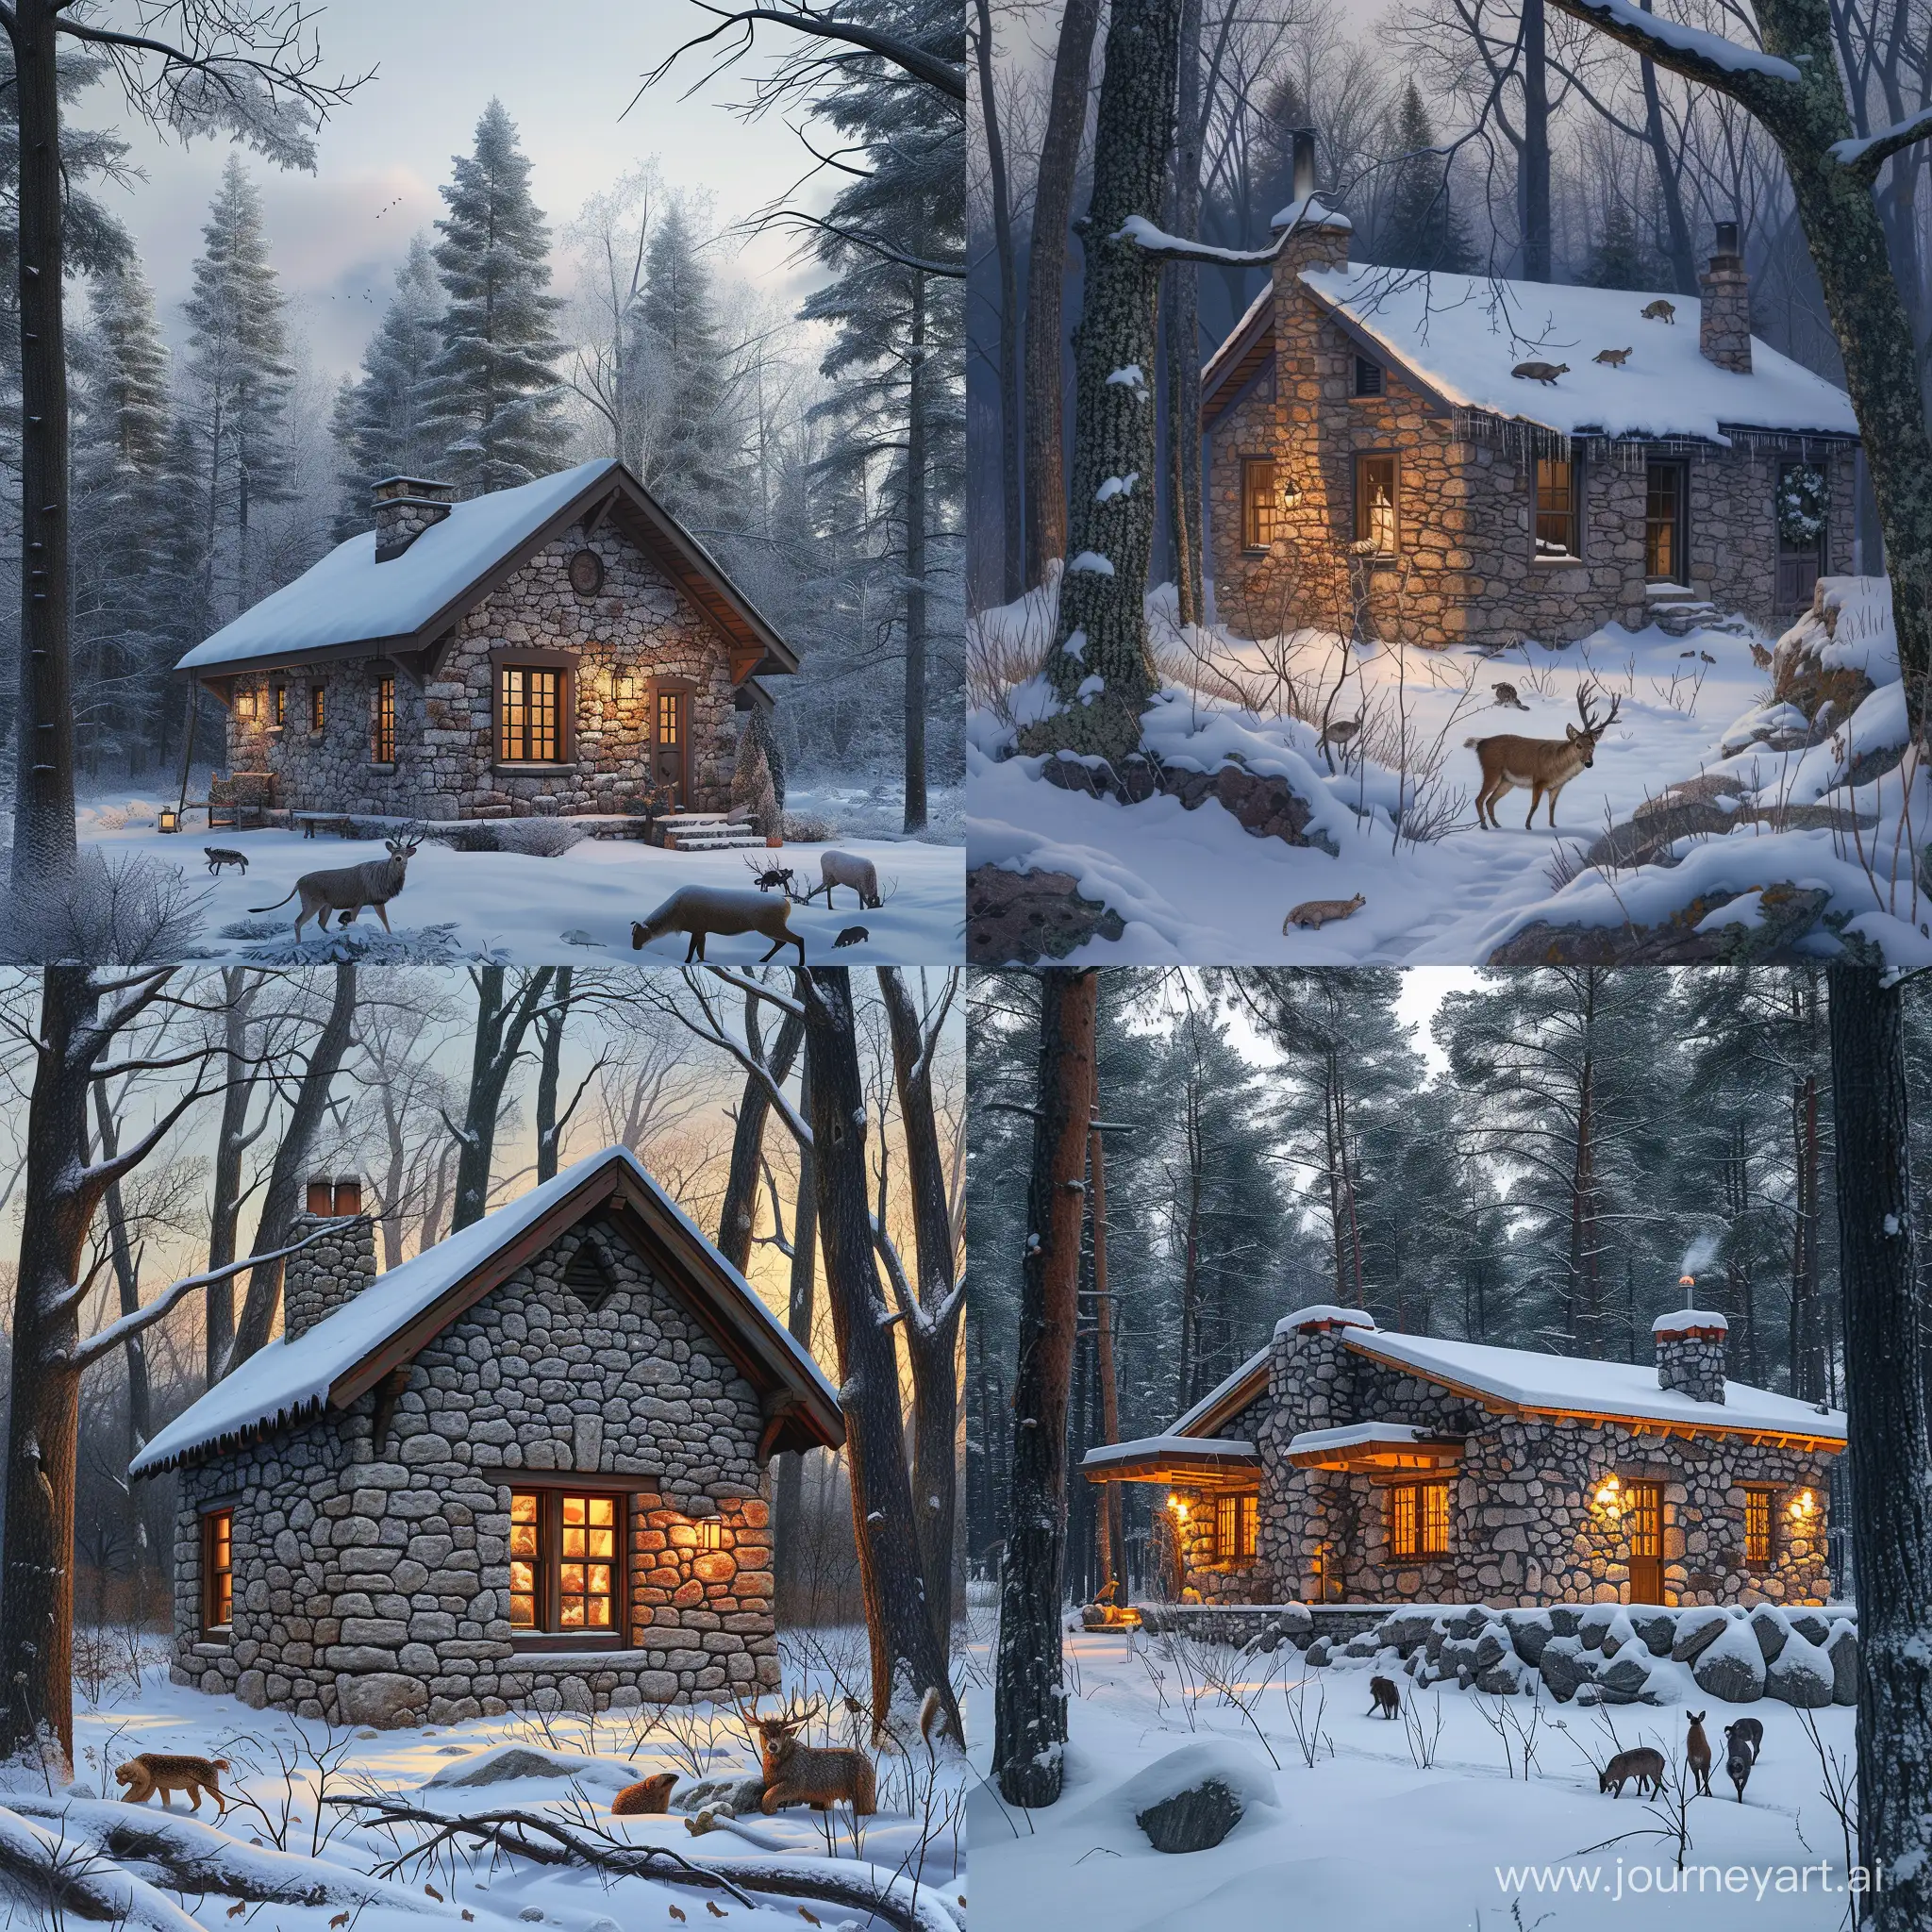 реализм, каменный одноэтажный дом в зимнем лесу, вечер, дикие звери